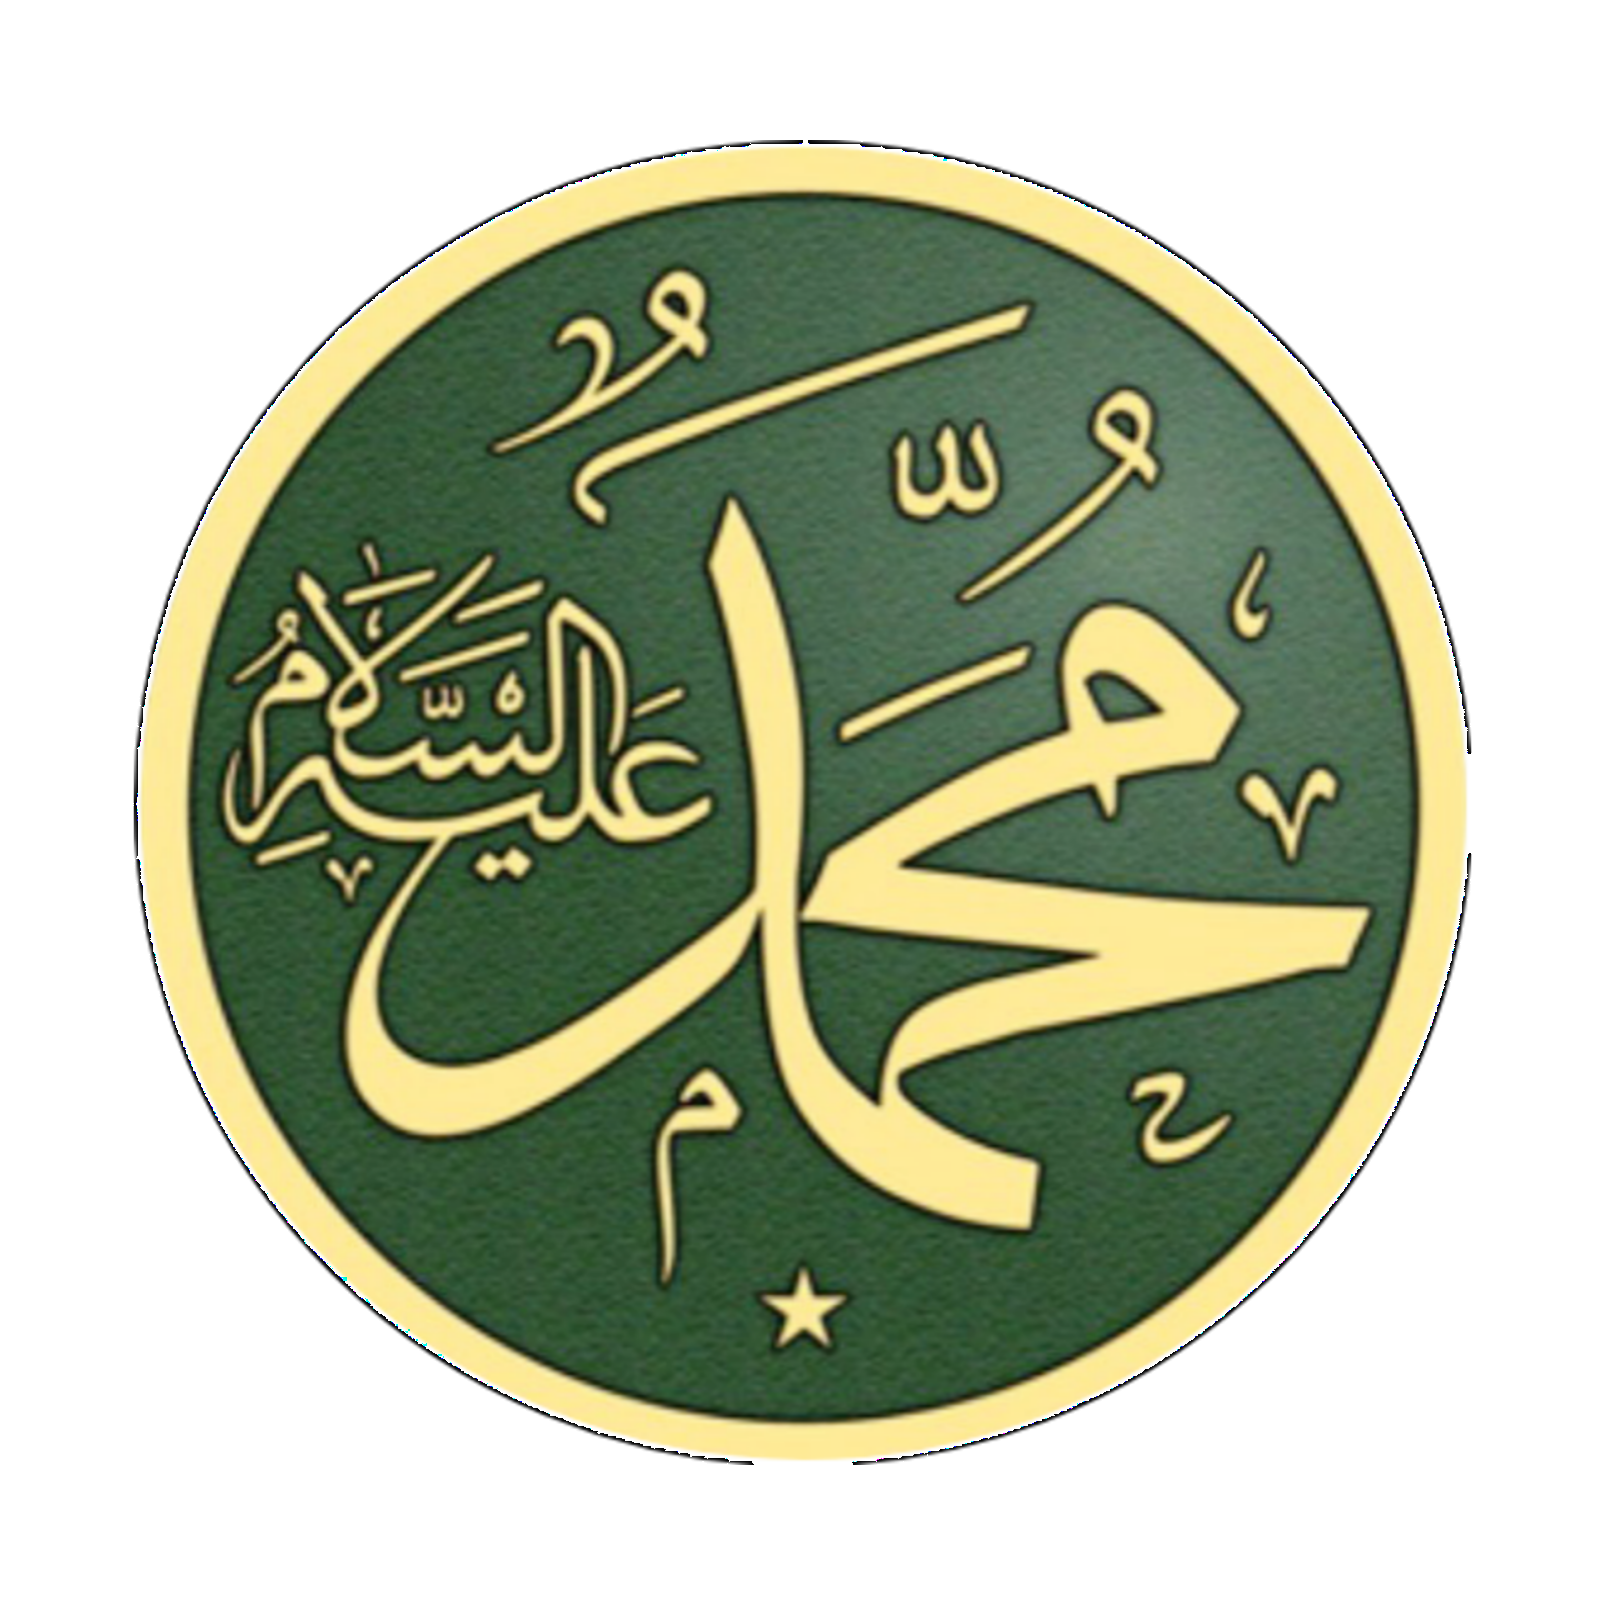 Пророк на арабском языке. Имя пророка Мухаммеда на арабском. Пророк Мухаммад на арабском. Мусульманские символы. Имя пророка Мухаммеда.